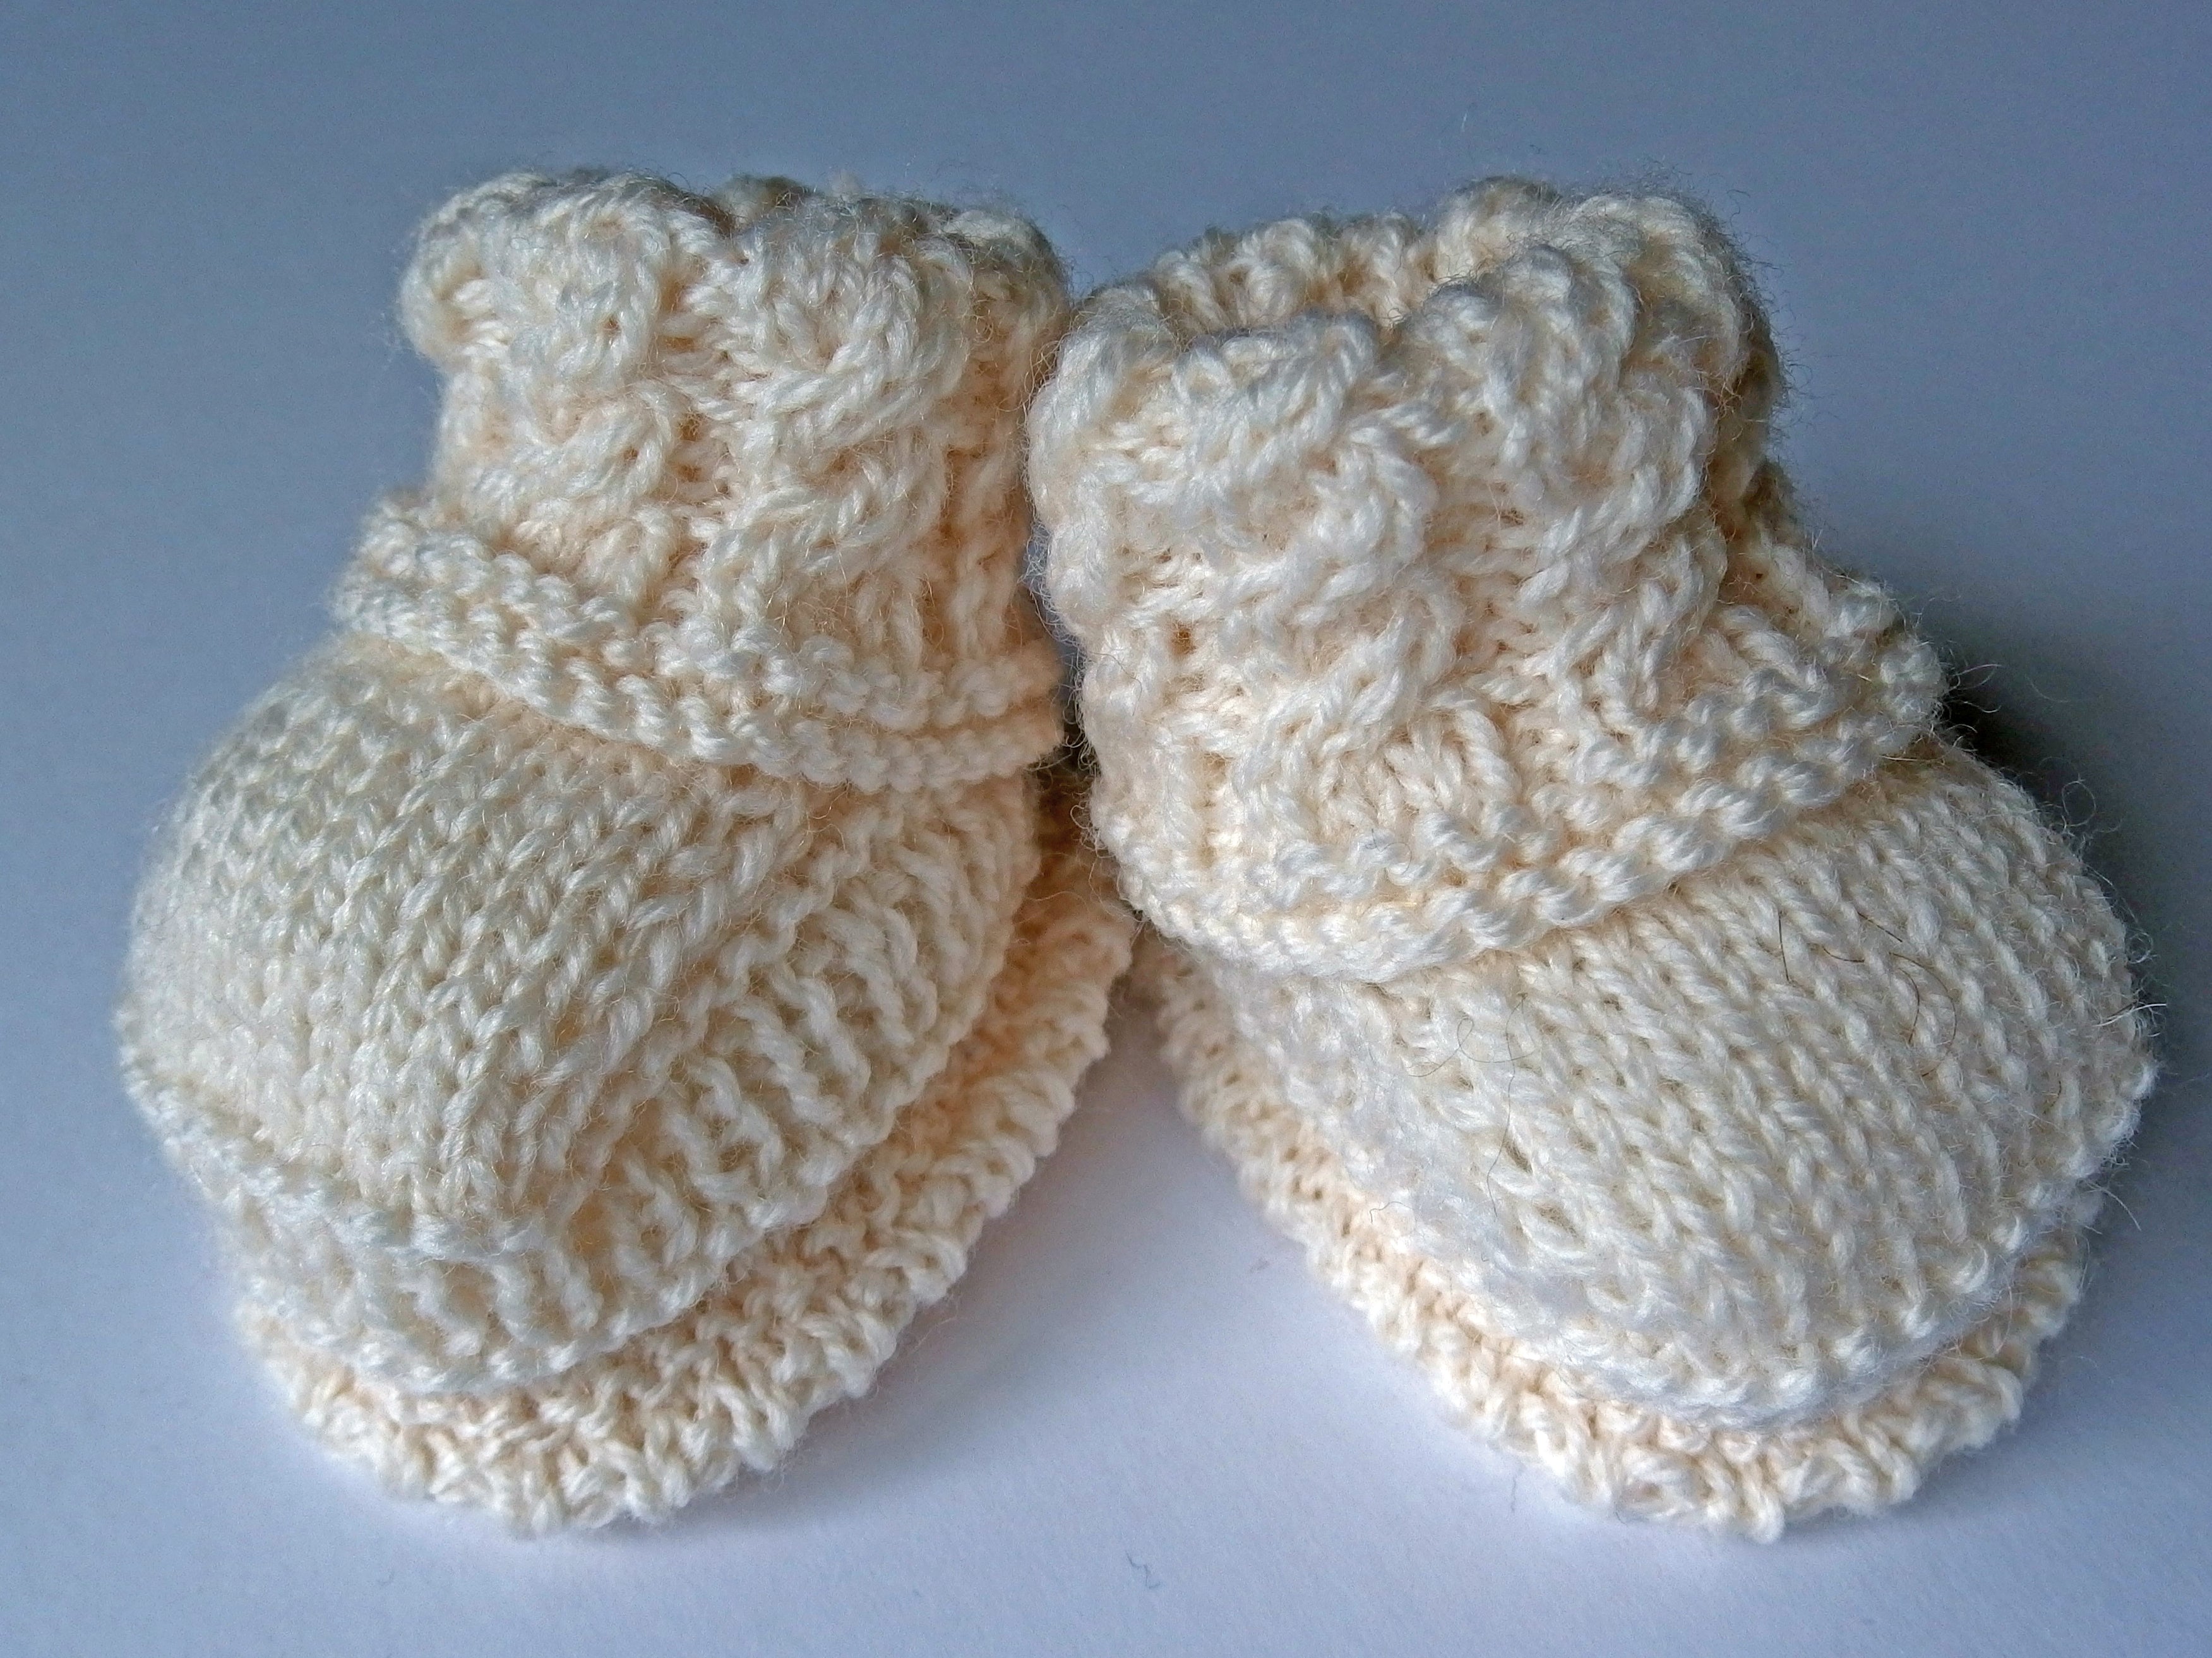 Copy of Baby Booties - made using 100% baby merino wool: cream